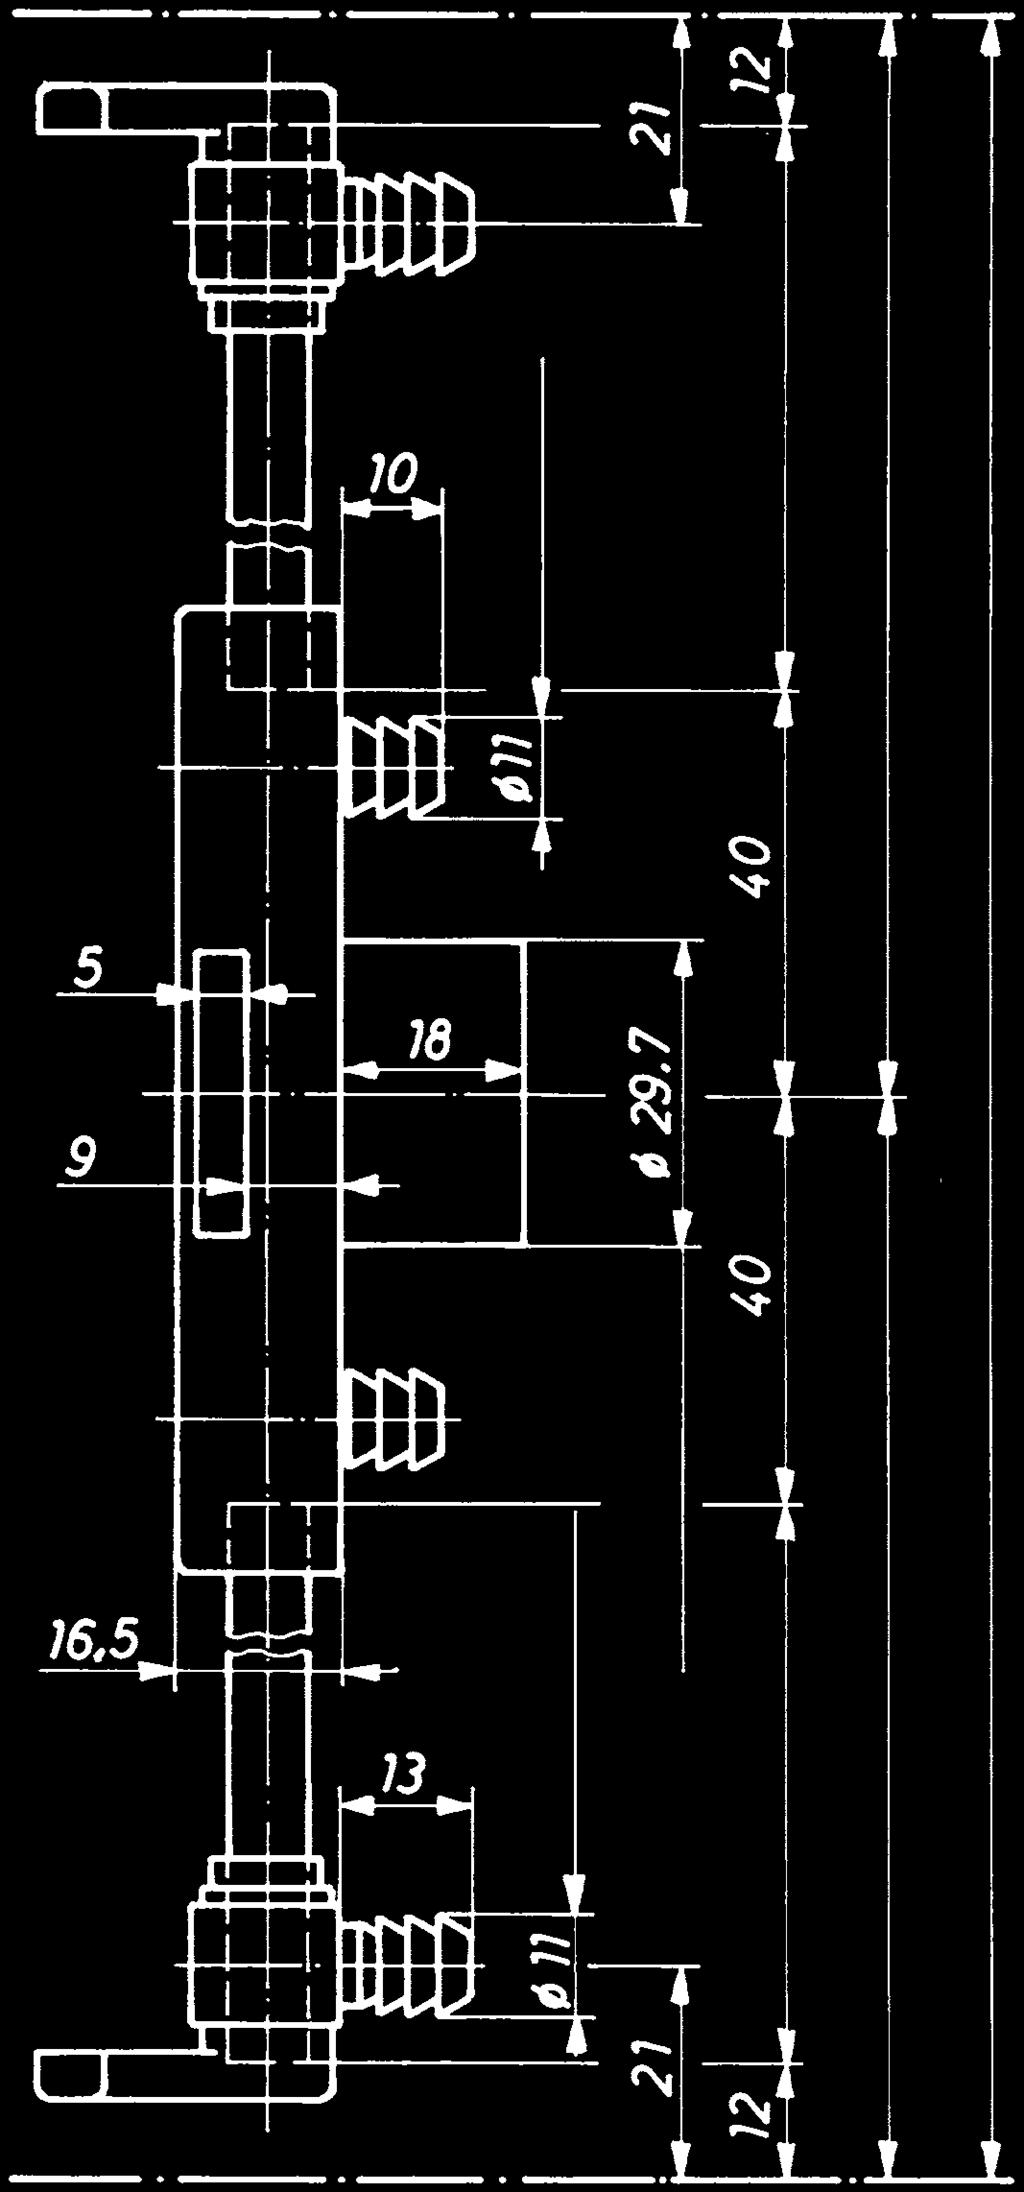 System-Drehstangenschloß 3092 OBJEKT-TOP, zum Dübeln, Stange geteilt, Schloßkasten aus Stahl, 1,5 mm stark, vernickelt.